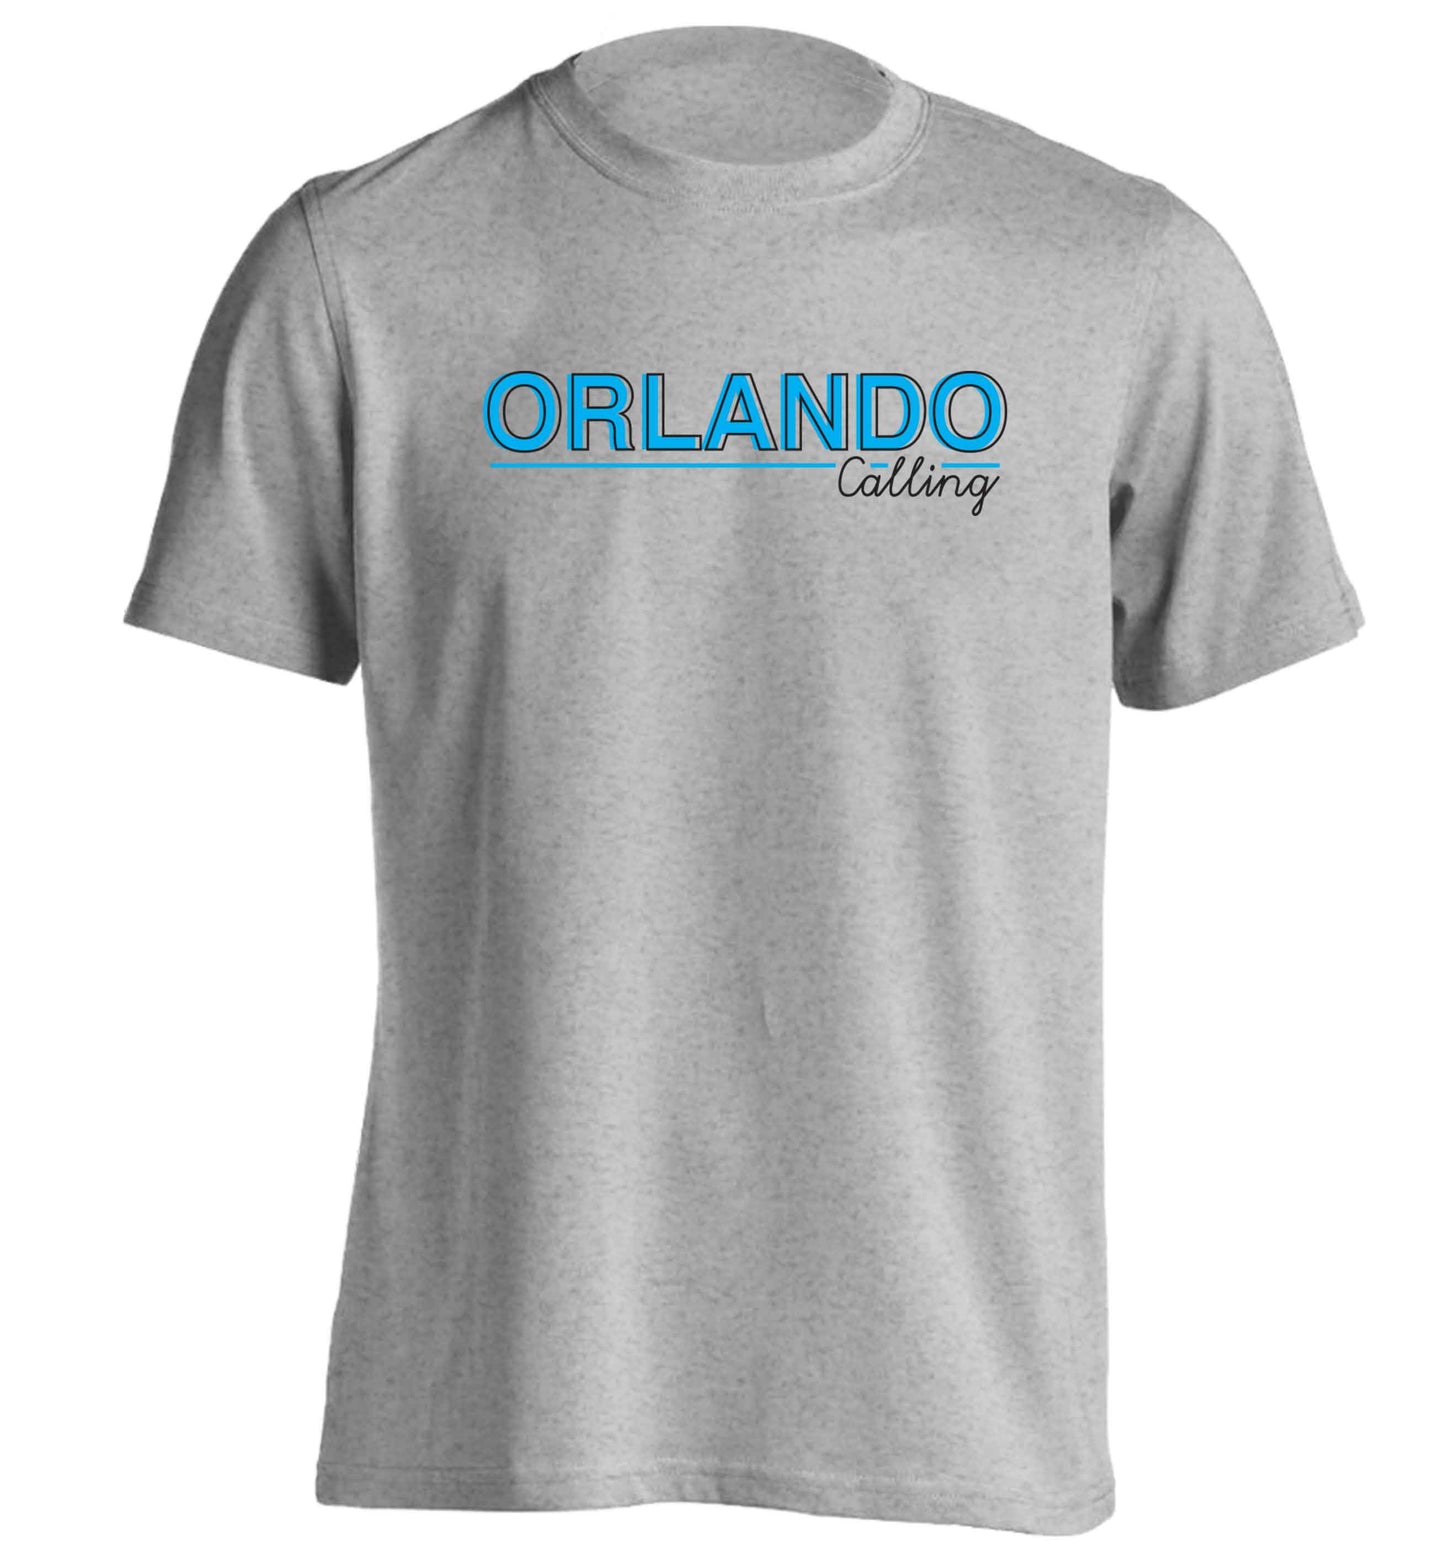 Orlando calling adults unisex grey Tshirt 2XL